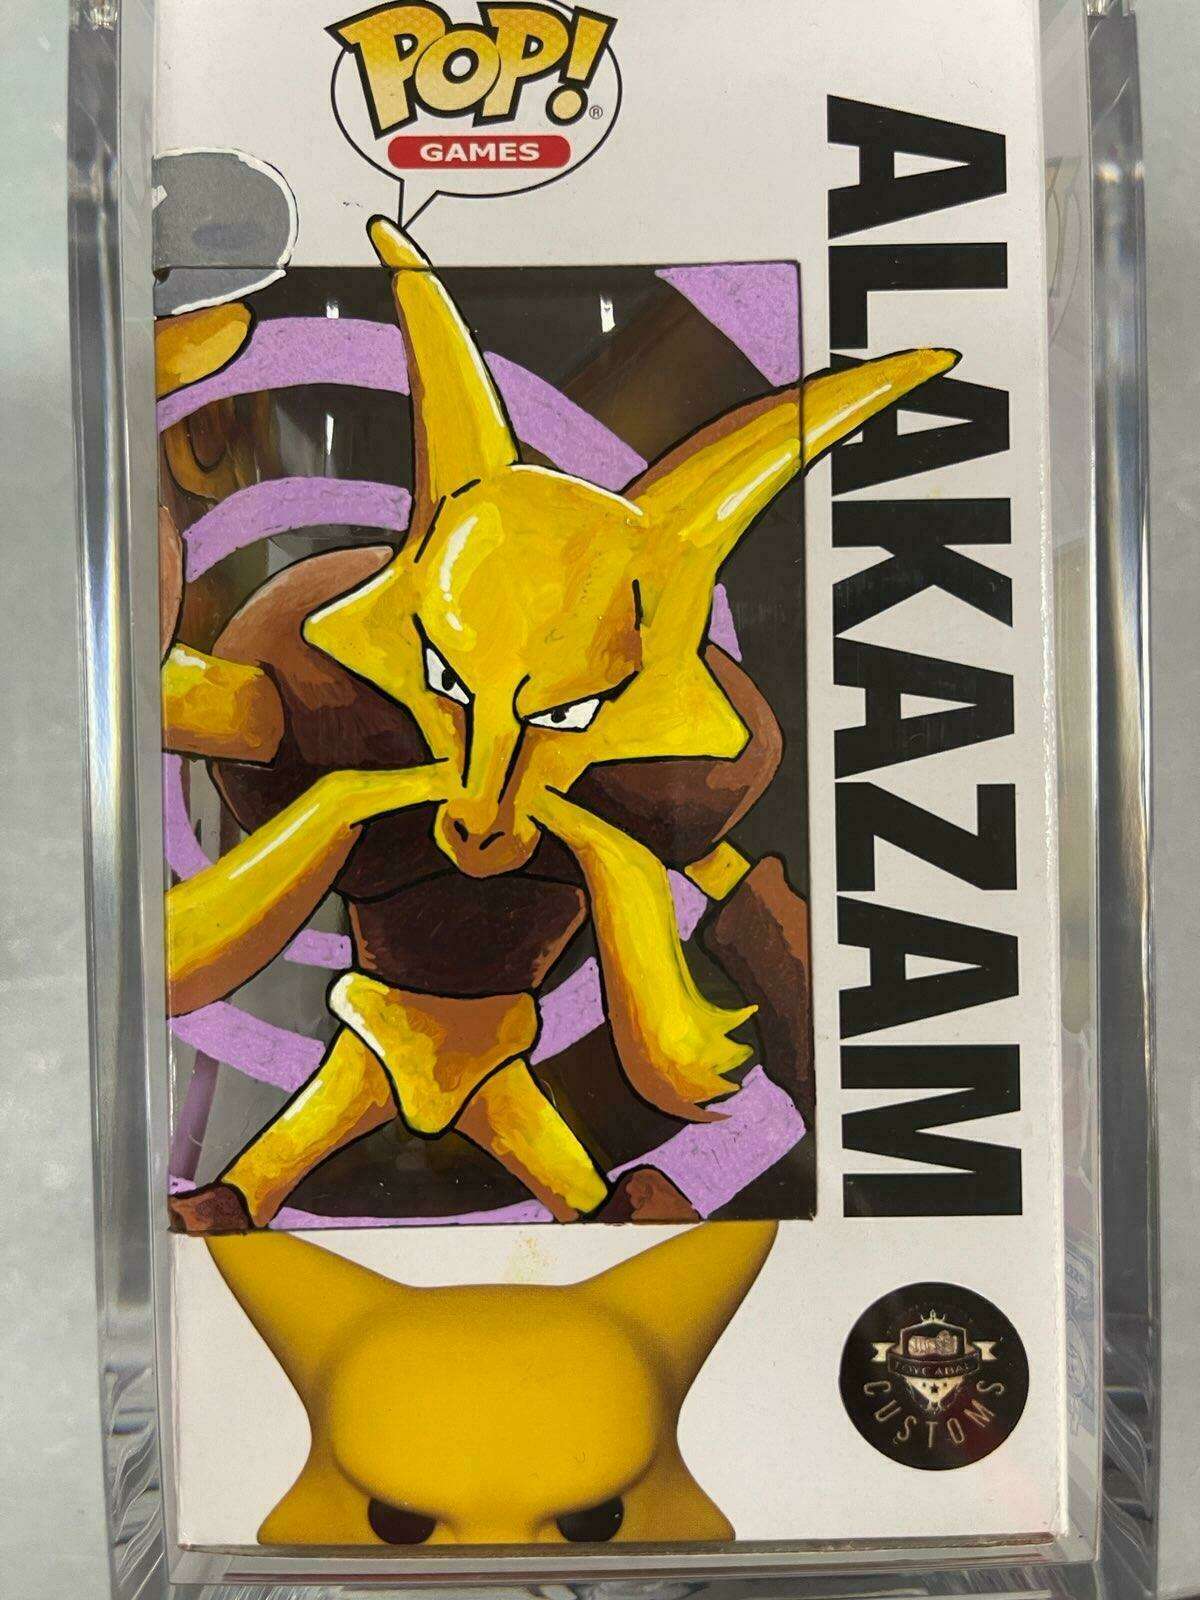 Funko Pop! Games Pokémon - Alakazam Vinyl Figure